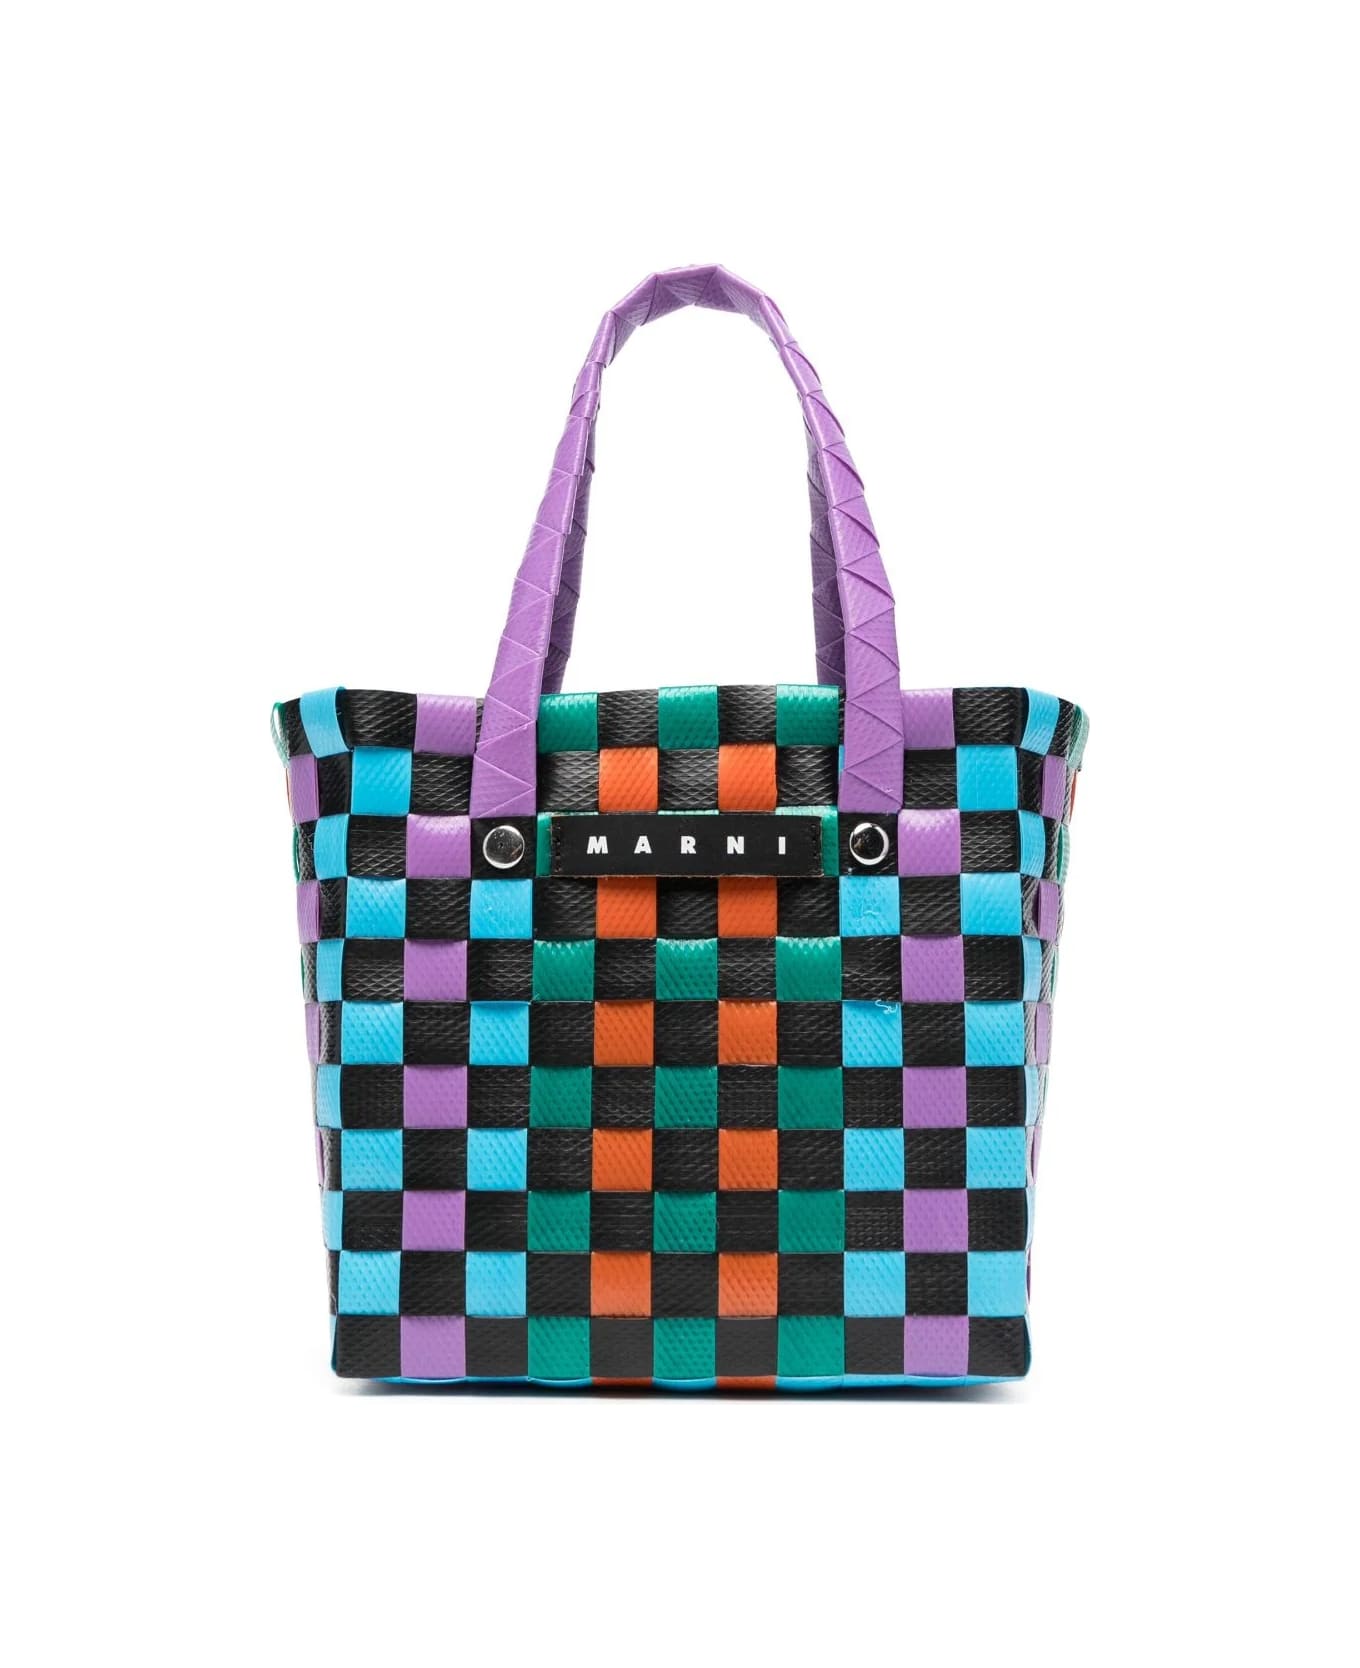 Marni Market Bucket Bag - Multicolor